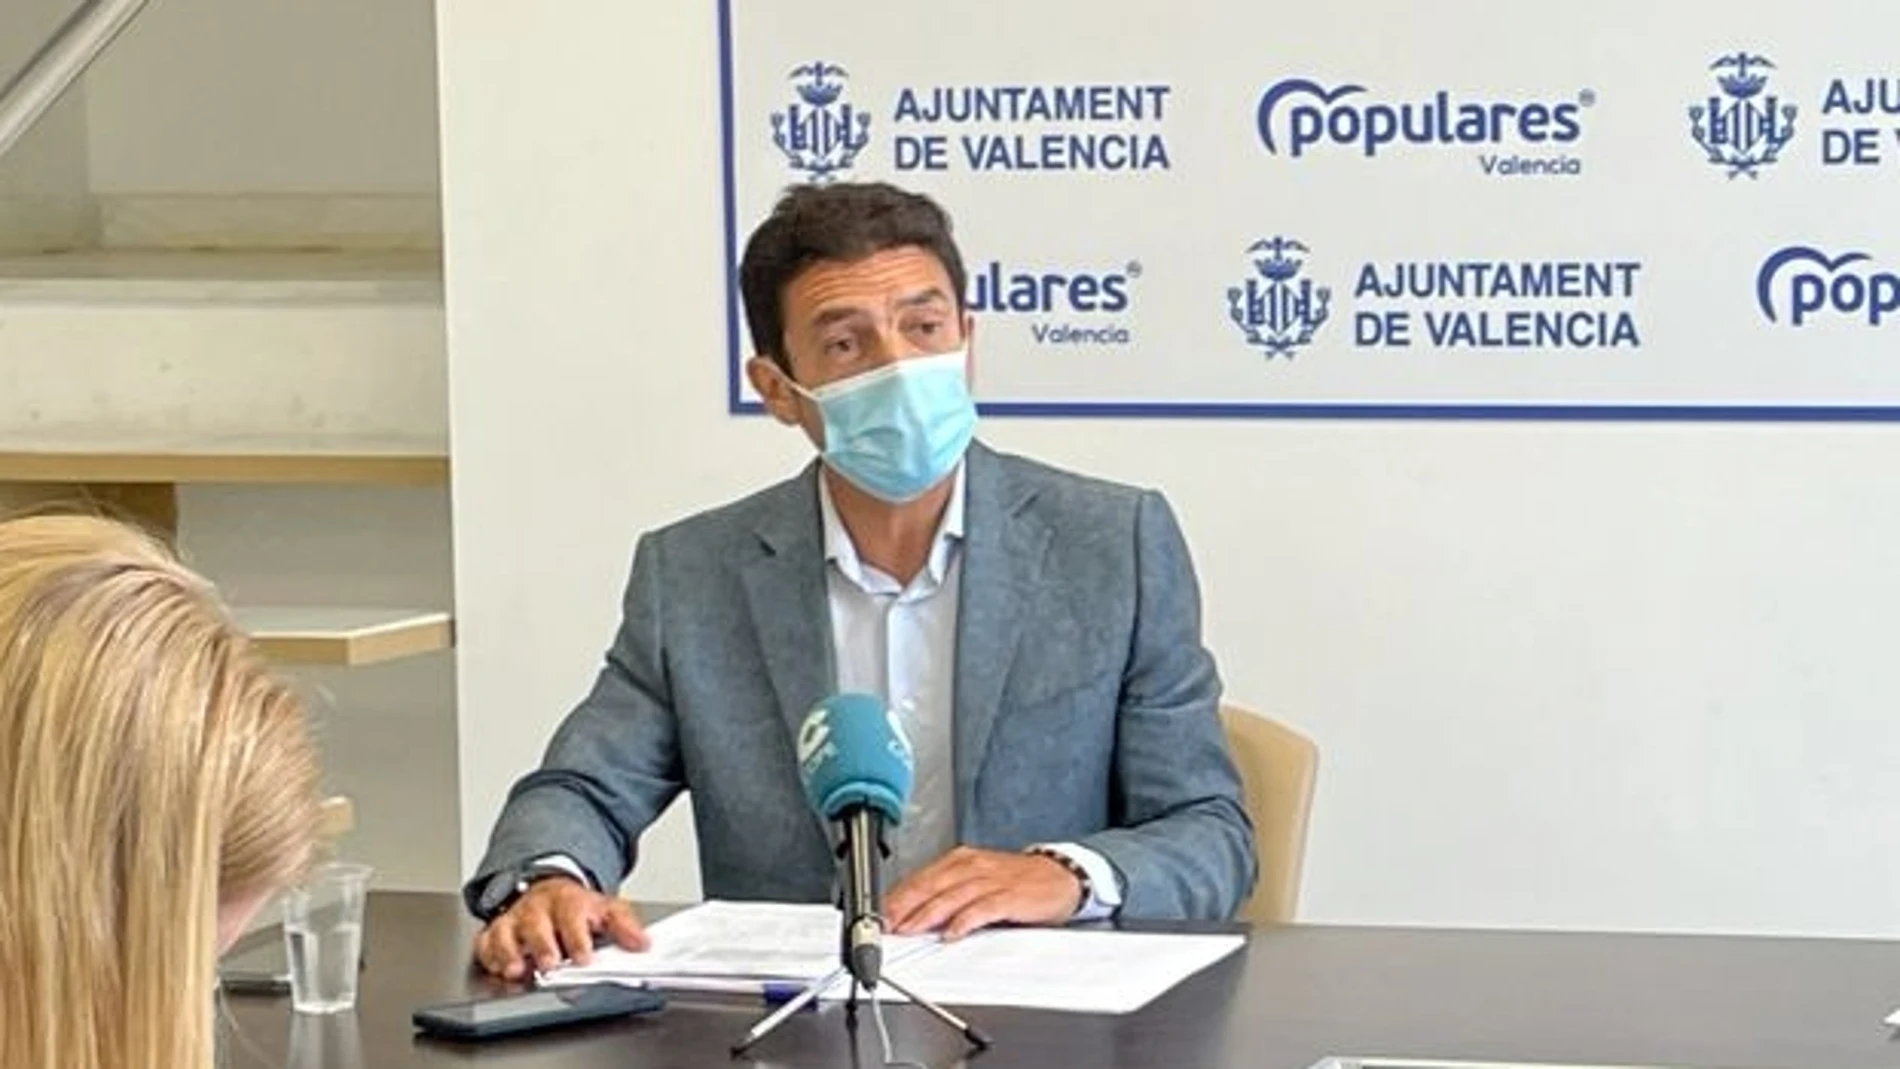 El concejal del PP, Carlos Mundina, ha sido el encargado de presentar el recurso